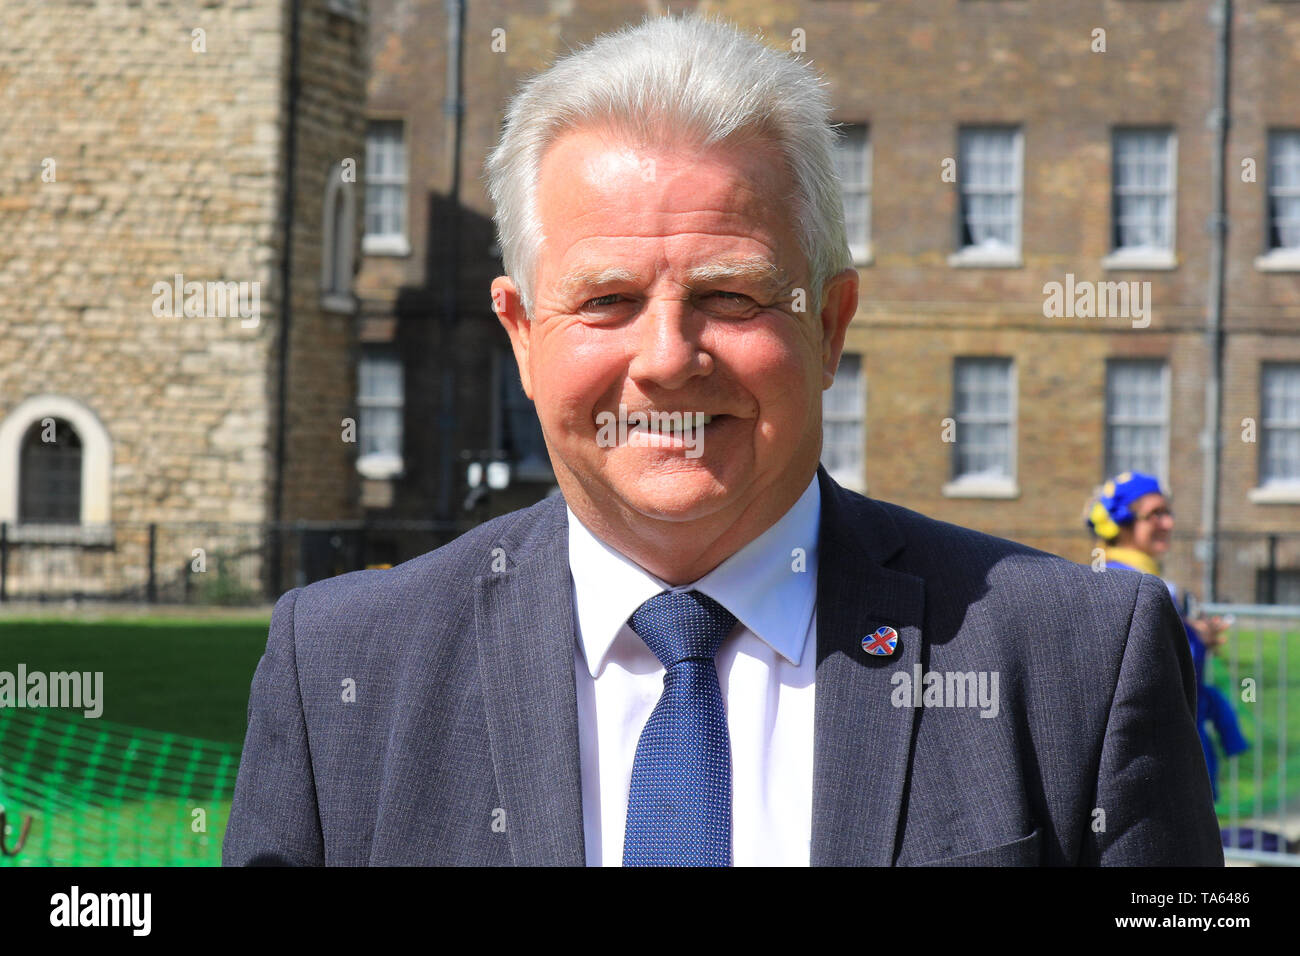 Westminster, Londra, Regno Unito. 22 Maggio, 2019. Partito conservatore scozzese MP Bill Grant, MP per Carrick e Cumnock. Credito: Imageplotter/Alamy Live News Foto Stock